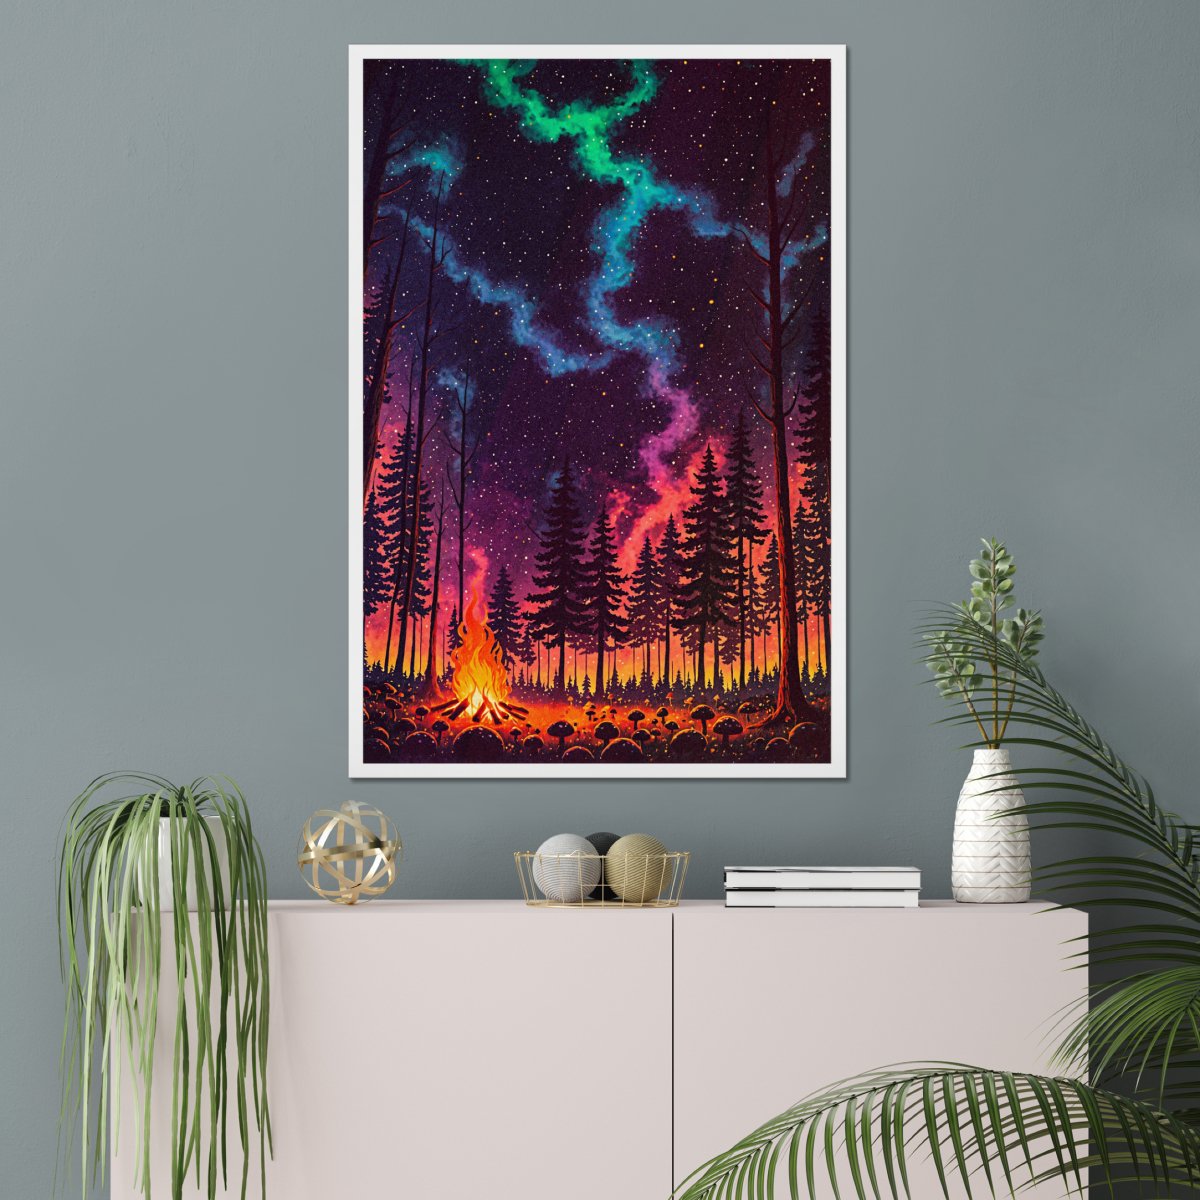 Fungi camp - Art print - Poster - Ever colorful